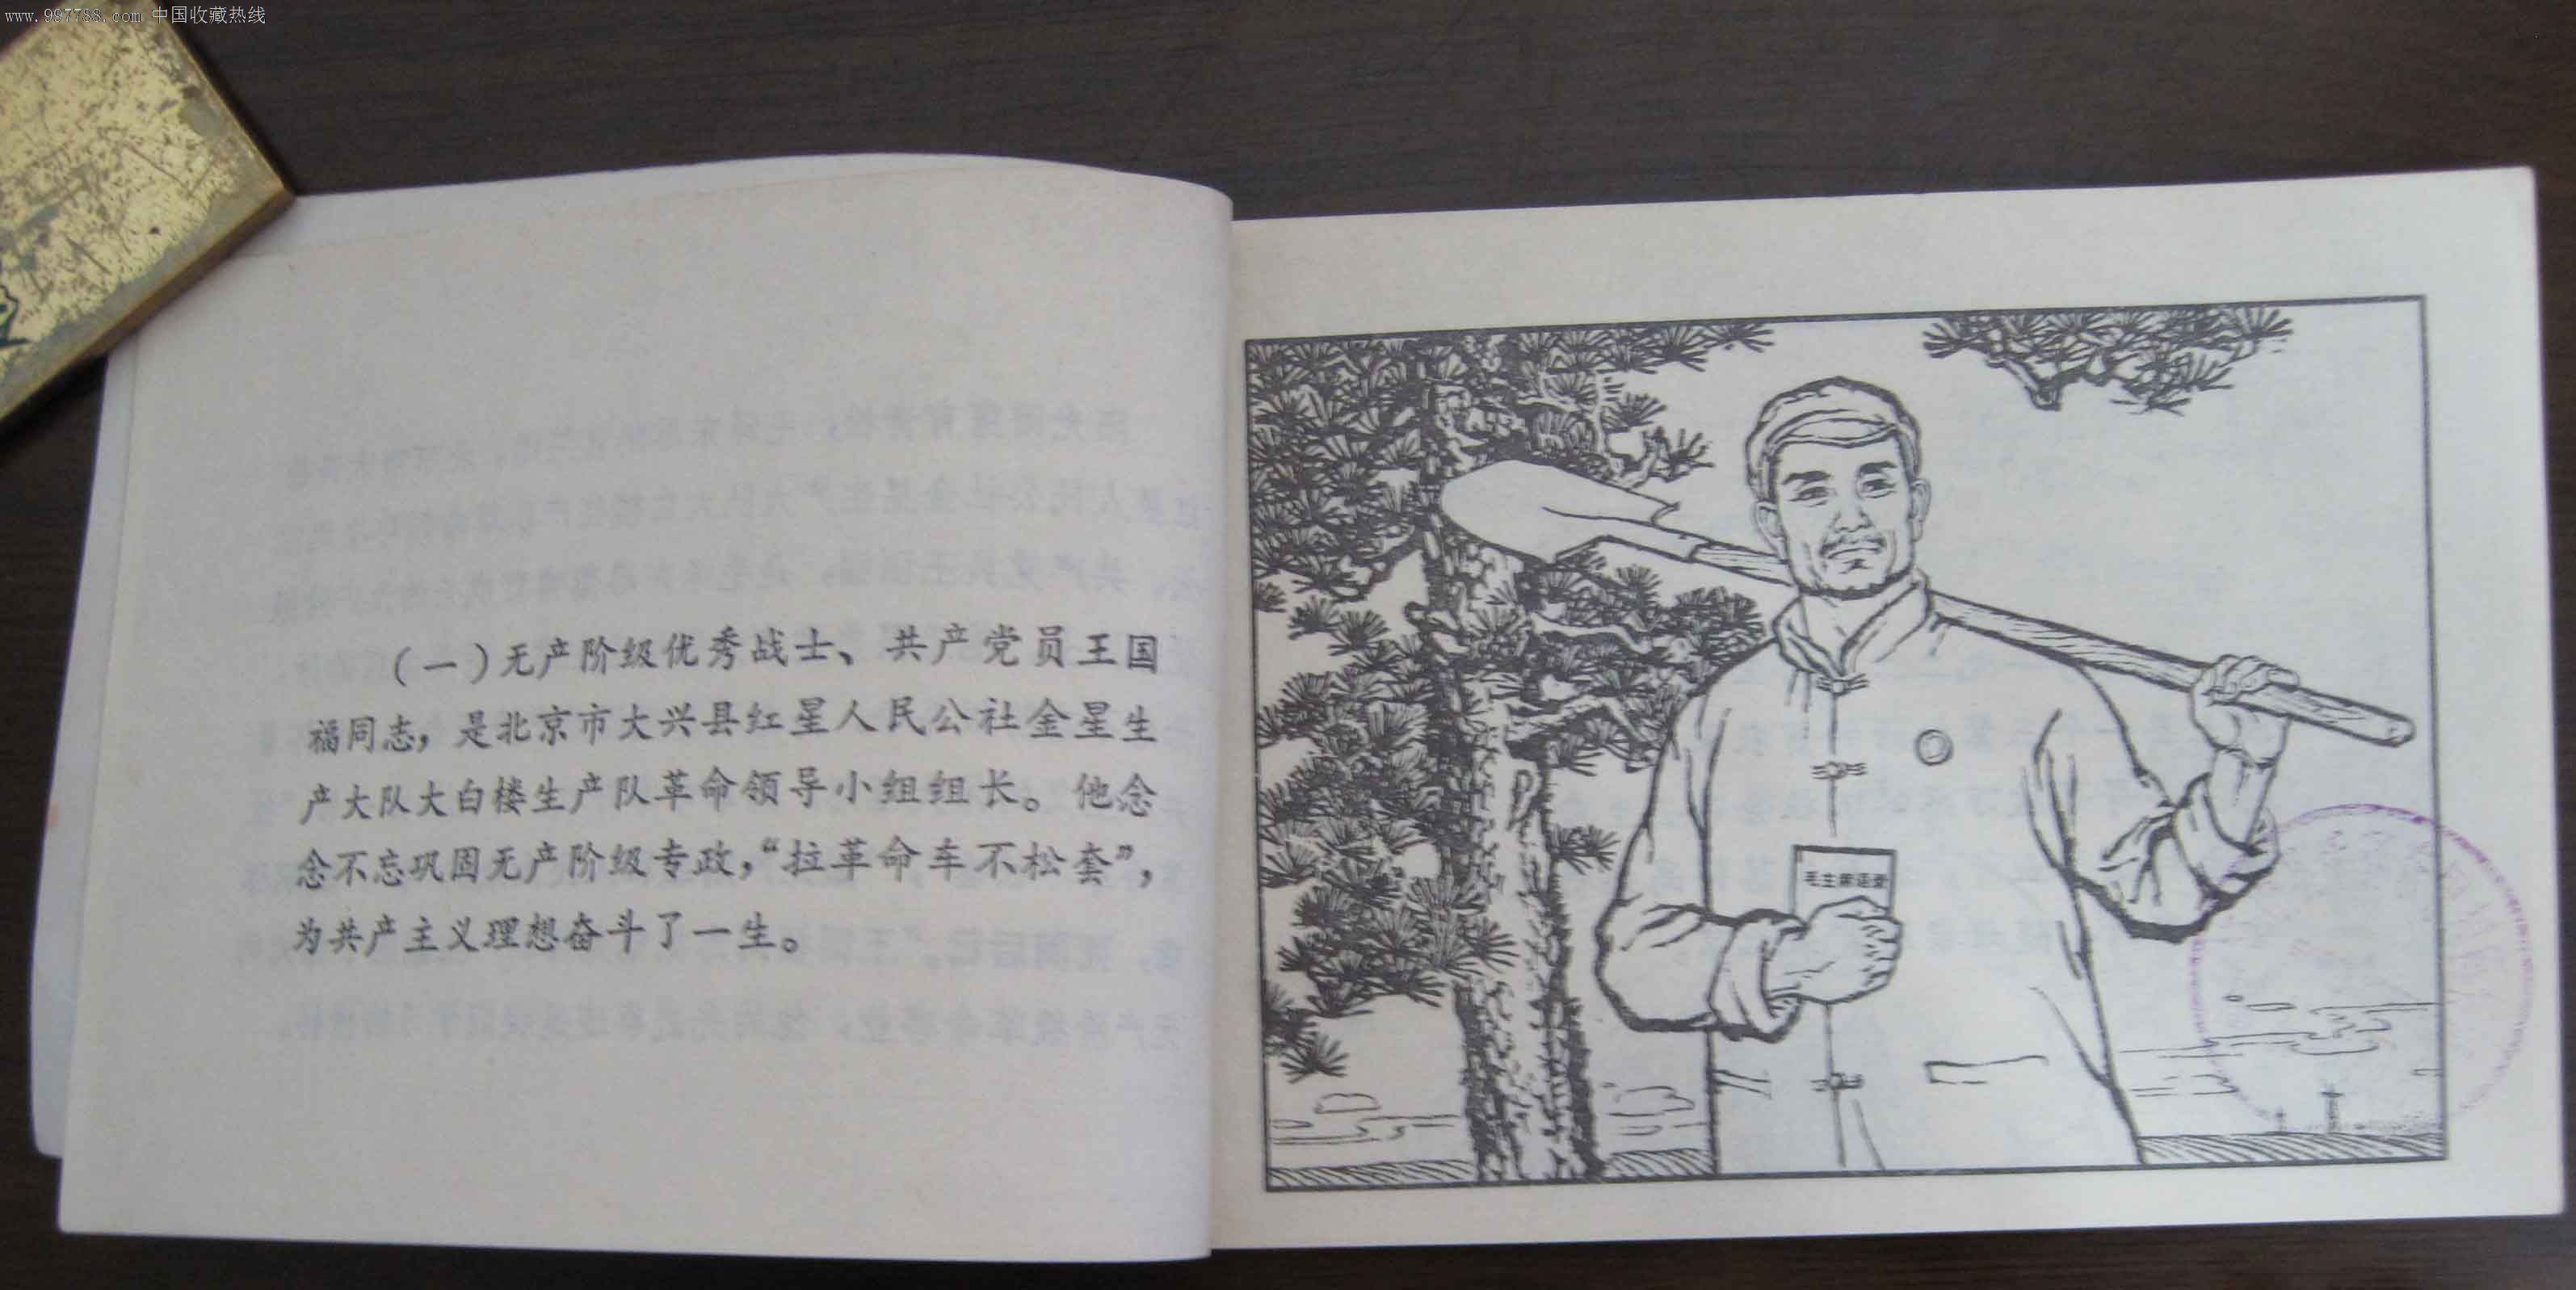 王国福,连环画/小人书,文革期间(1967年-1976年)